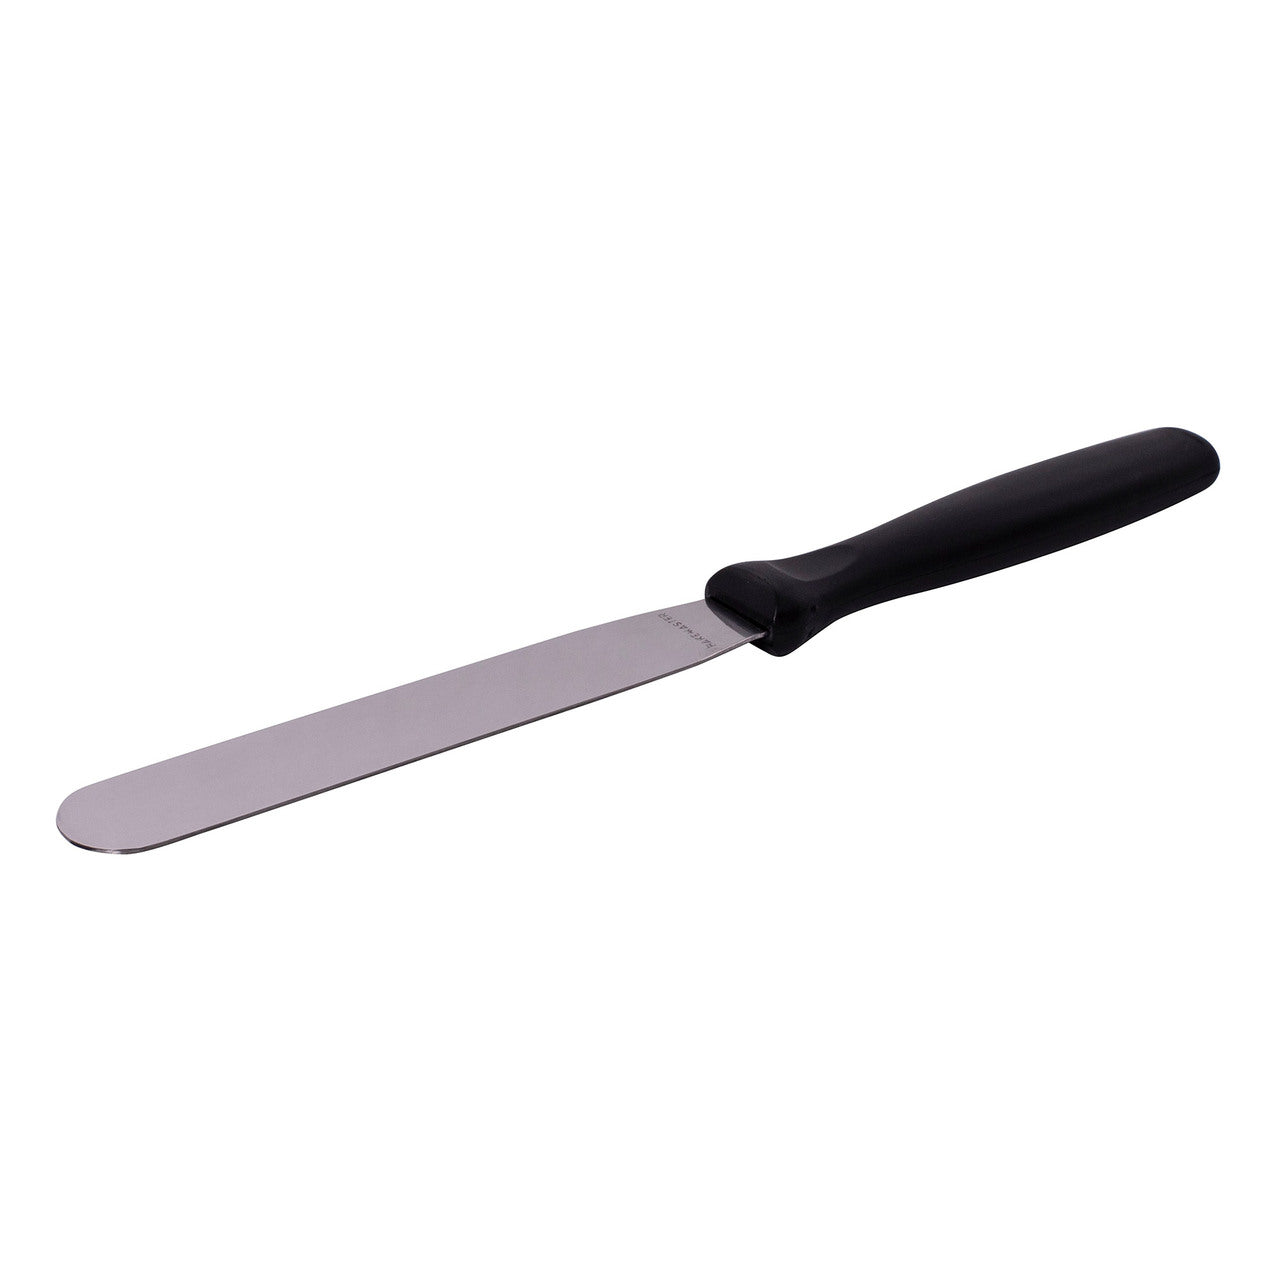 Bakemaster Straight Palette Knife